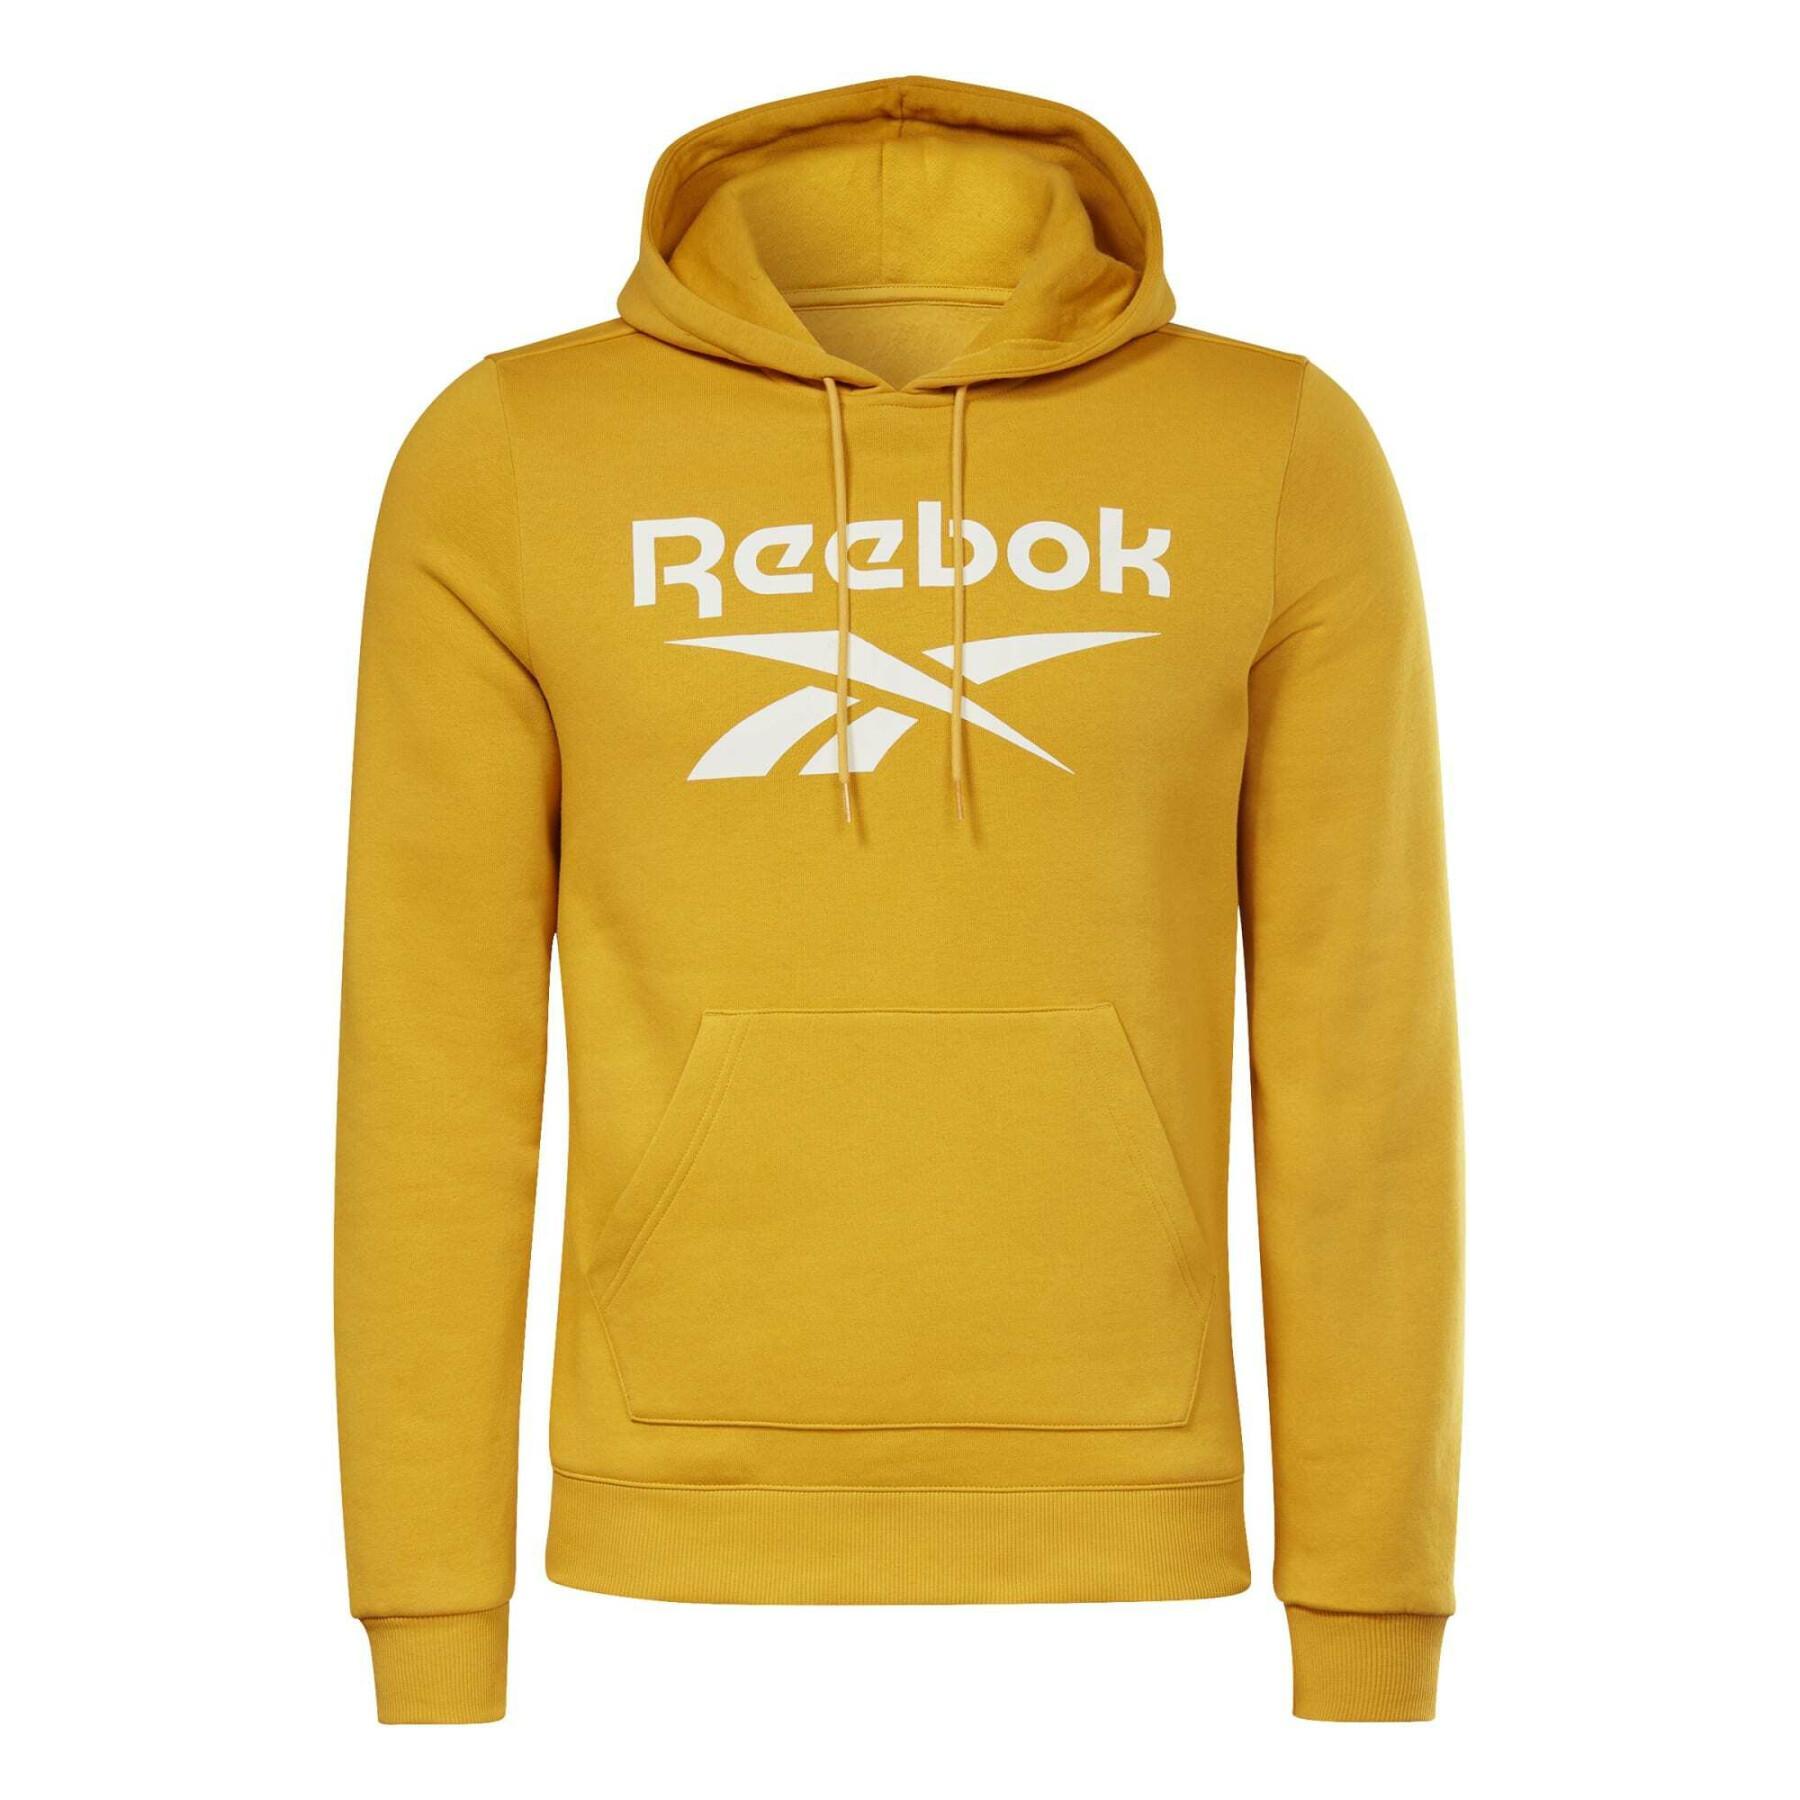 Women's fleece hooded sweatshirt Reebok Identity